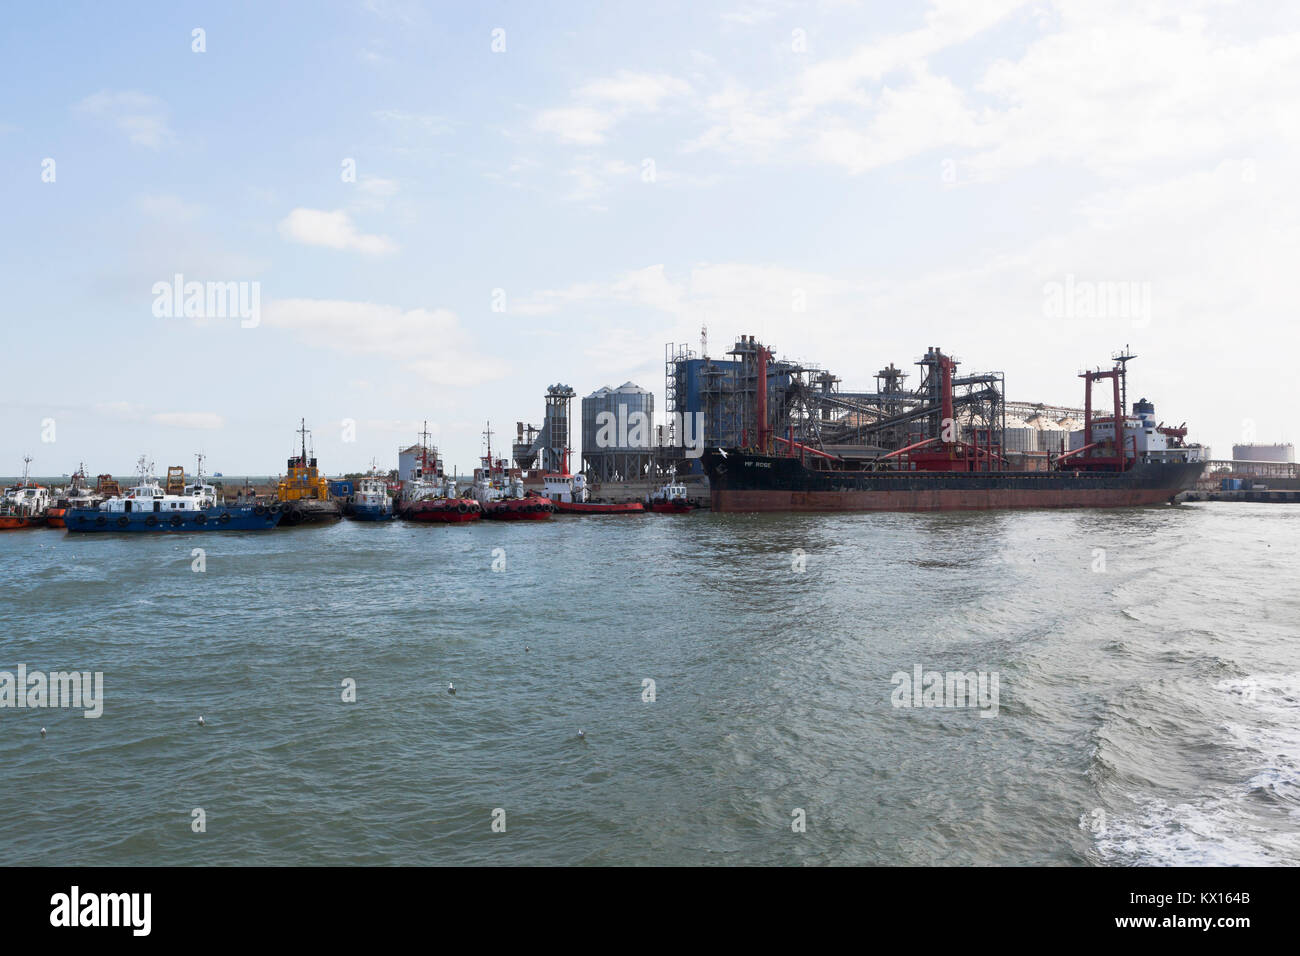 Kosa Chushka Temryuk, distrito, región de Krasnodar, Rusia - Julio 18, 2017: Vista de la terminal de granos del puerto marítimo de la región del Cáucaso y el universal Foto de stock